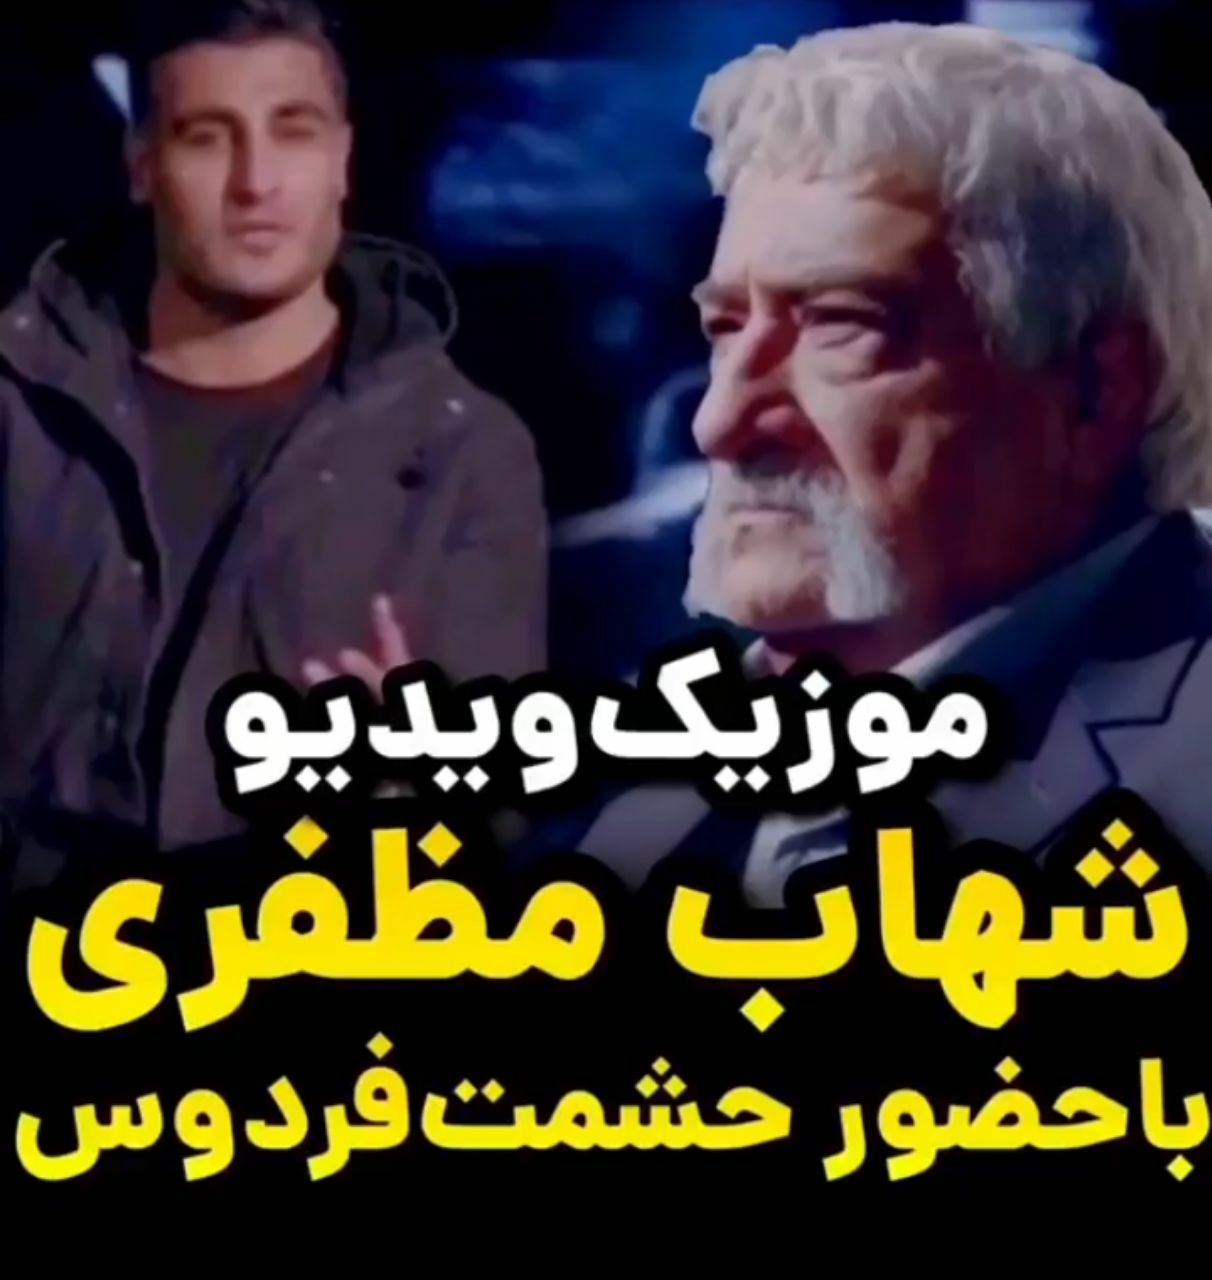 موزیک ویدئو زیبای “شهاب مظفری” خواننده “ستایش” با بازی “حشمت فردوس”+ فیلم